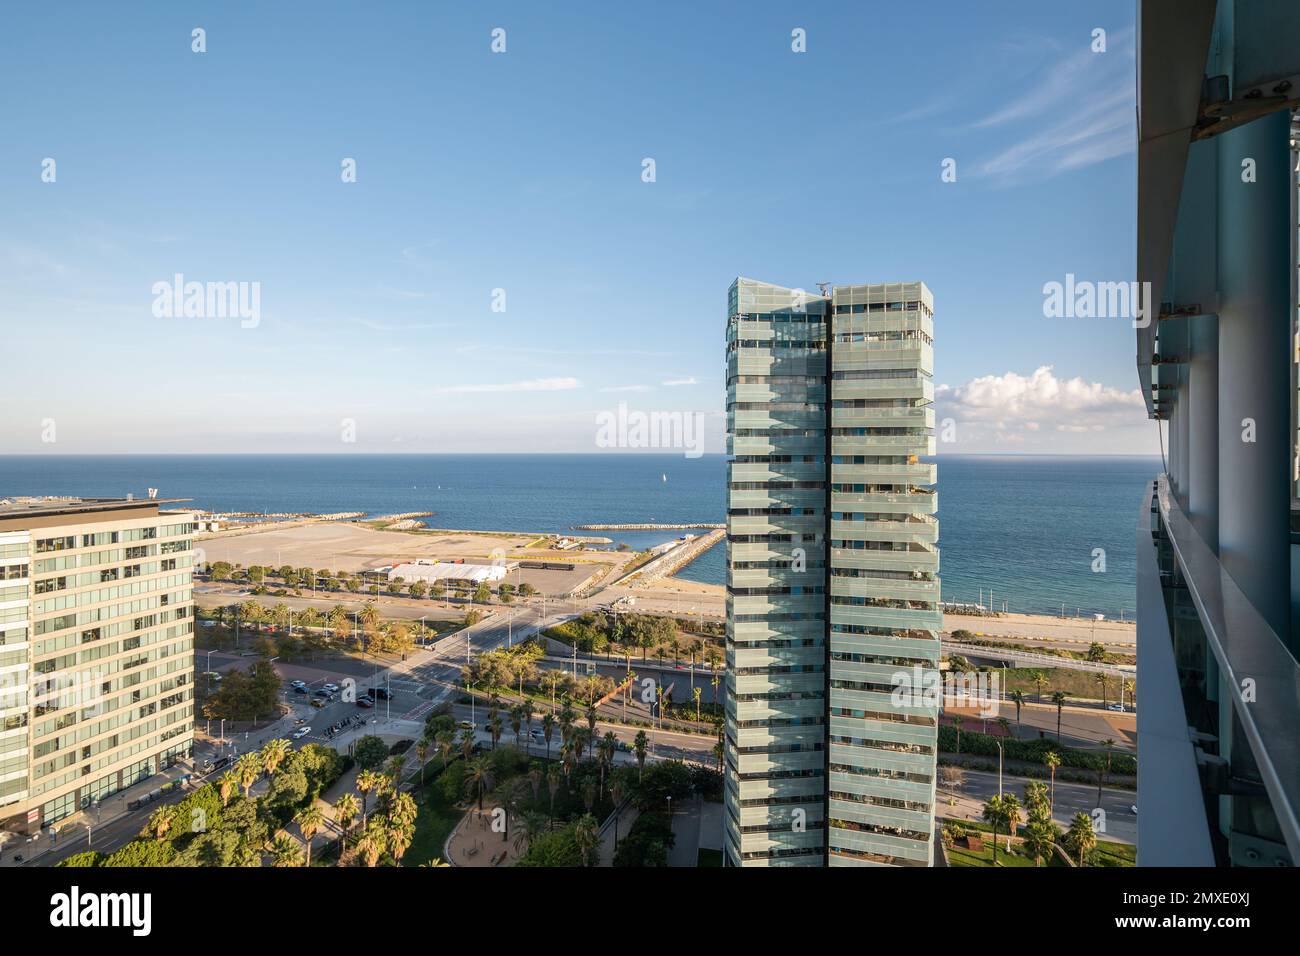 Küstenabschnitt der Stadt mit hohen Gebäuden, entwickelte Infrastruktur für Touristen, um sich zu entspannen und das Meeresklima zu genießen. Blick von der Höhe des Meeres Stockfoto